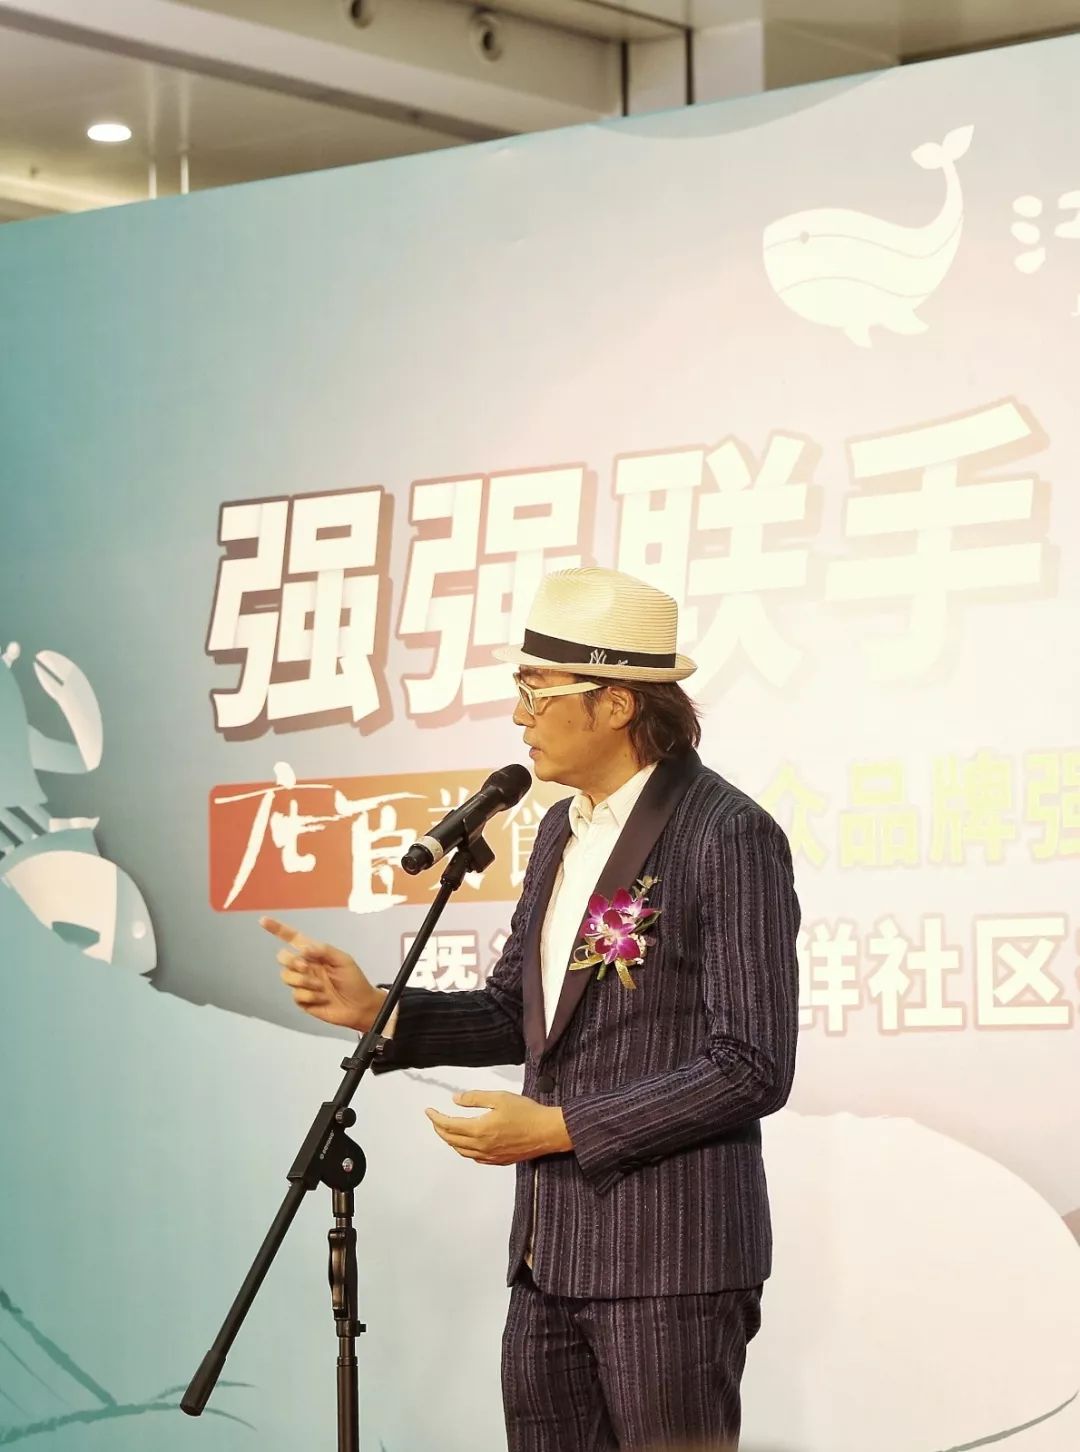 农业科技有限公司,广州江南果菜市场创始人,董事长叶灿江先生代表江楠